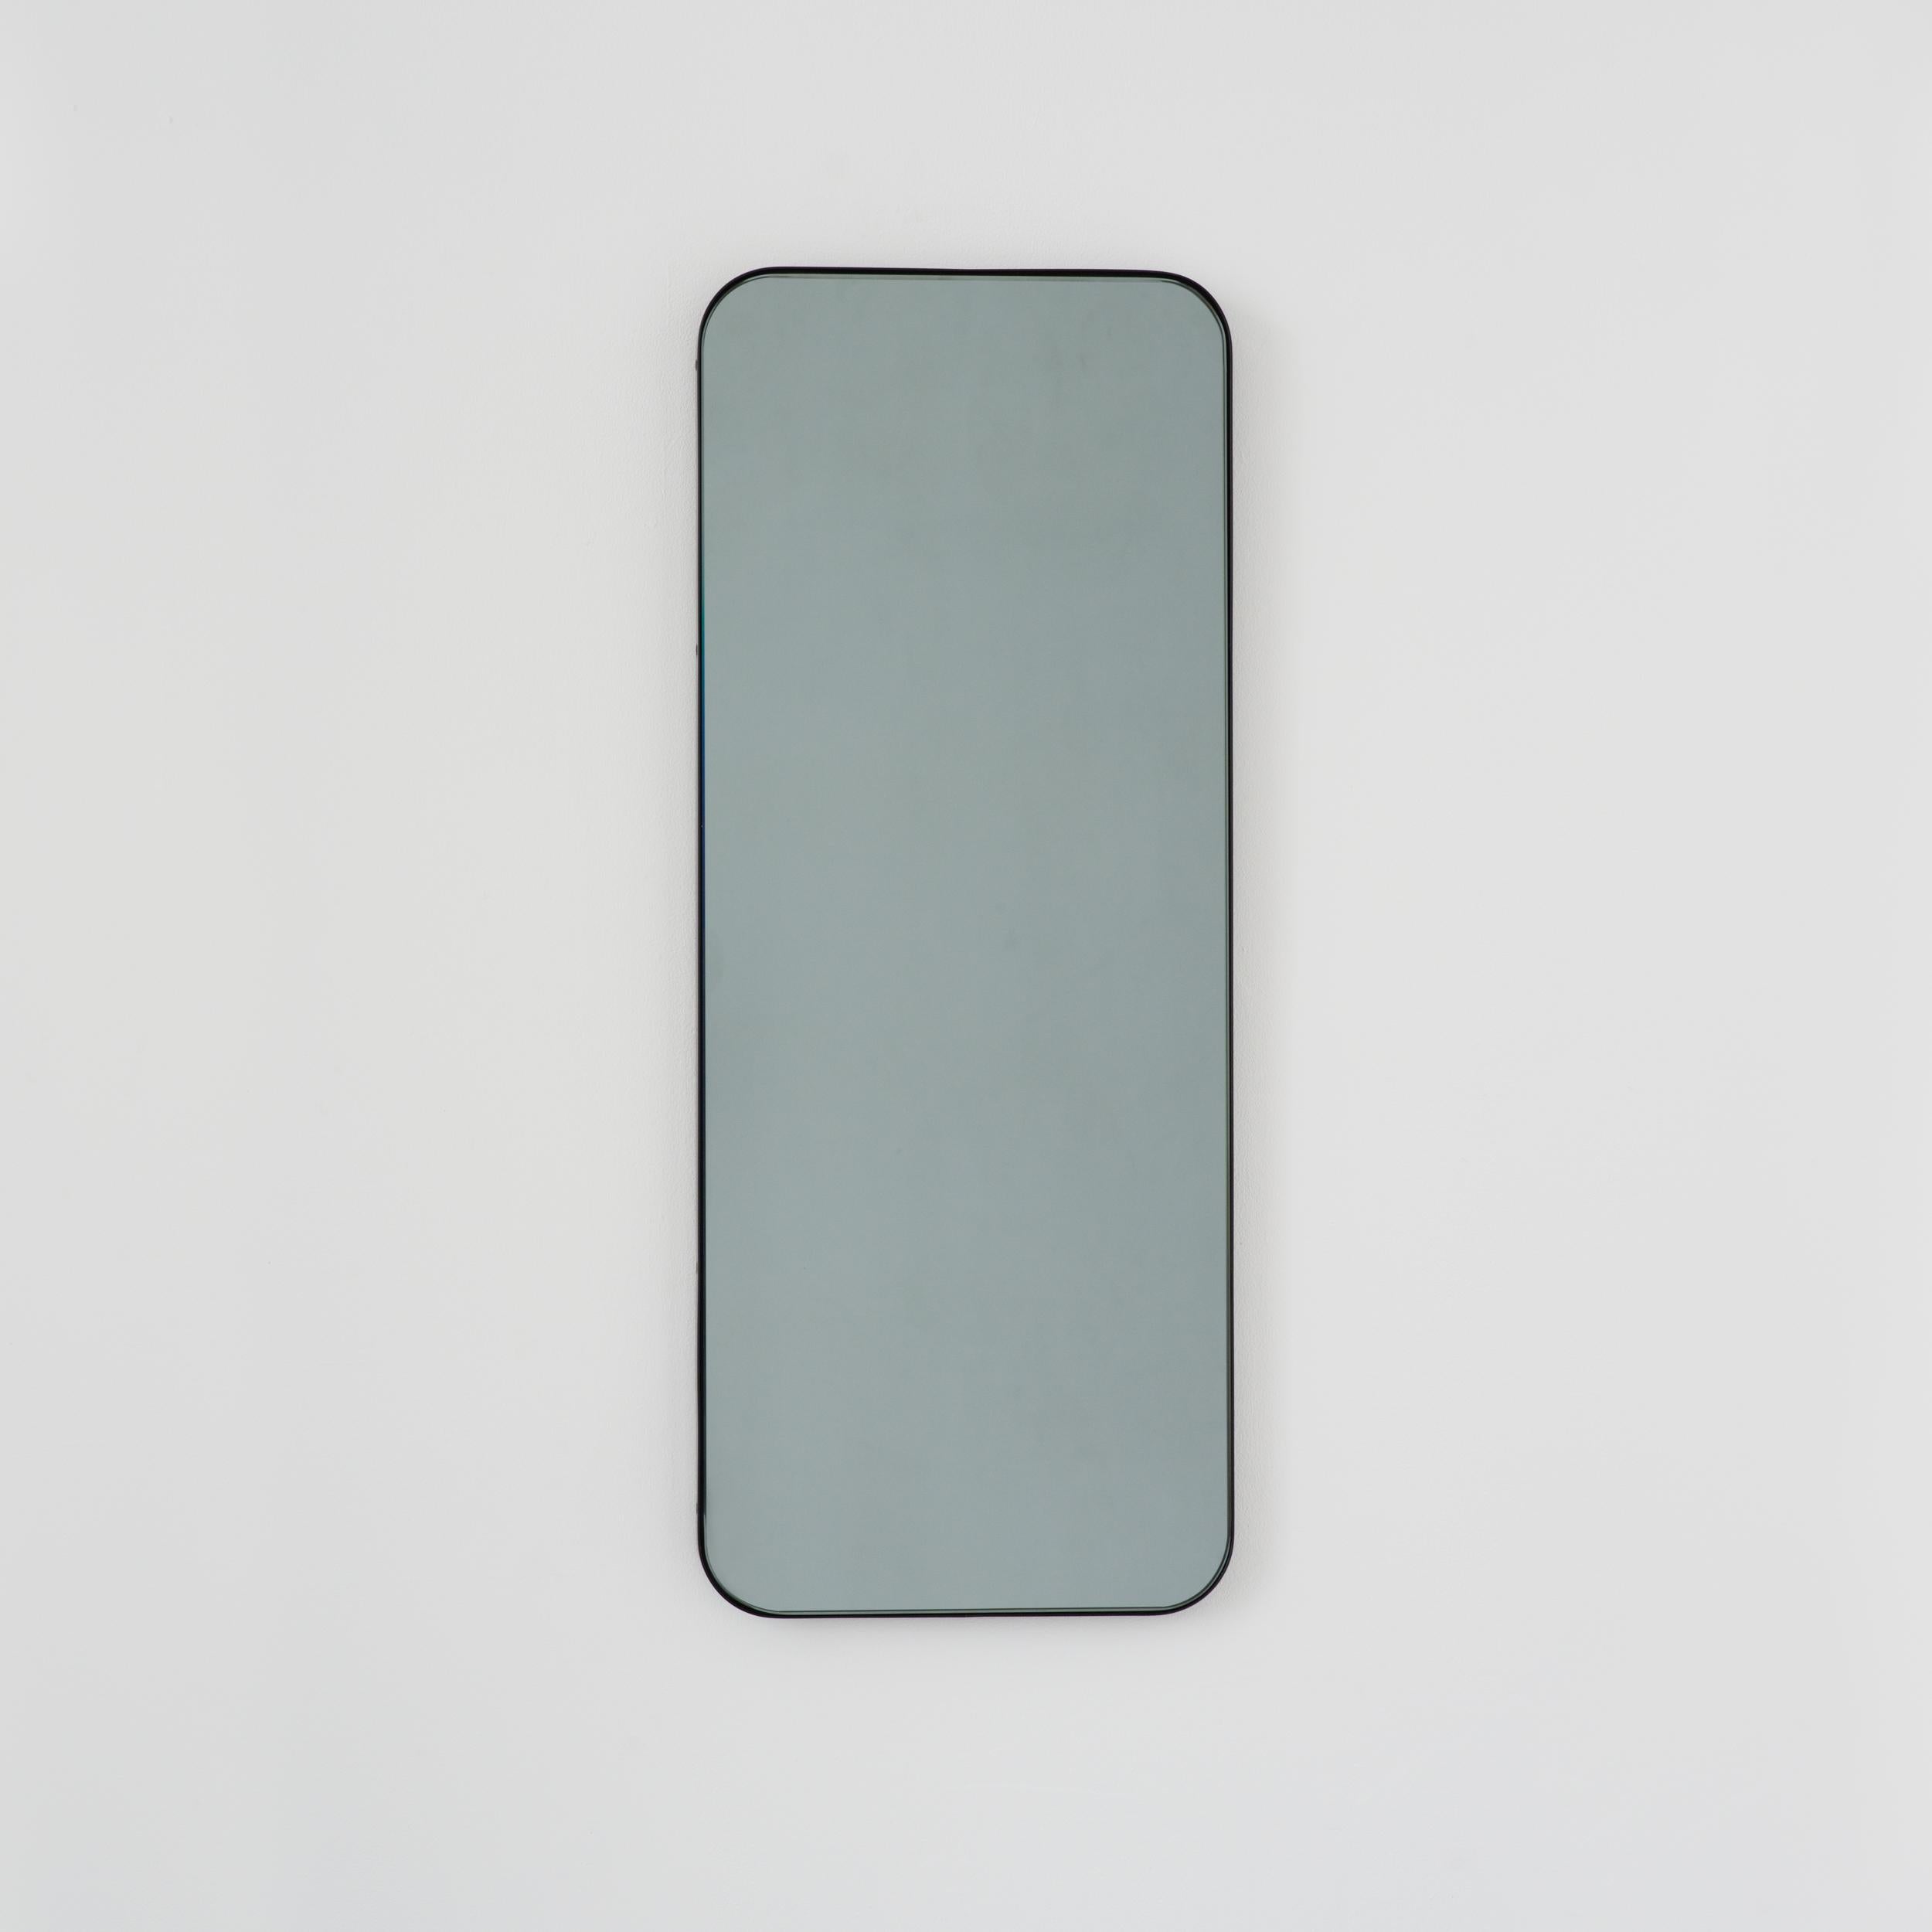 Miroir rectangulaire contemporain teinté noir avec un cadre noir élégant. Une partie de la charmante collection Quadris™, conçue et fabriquée à la main à Londres, au Royaume-Uni. 

Fourni avec une barre en z spécialisée pour une installation facile.